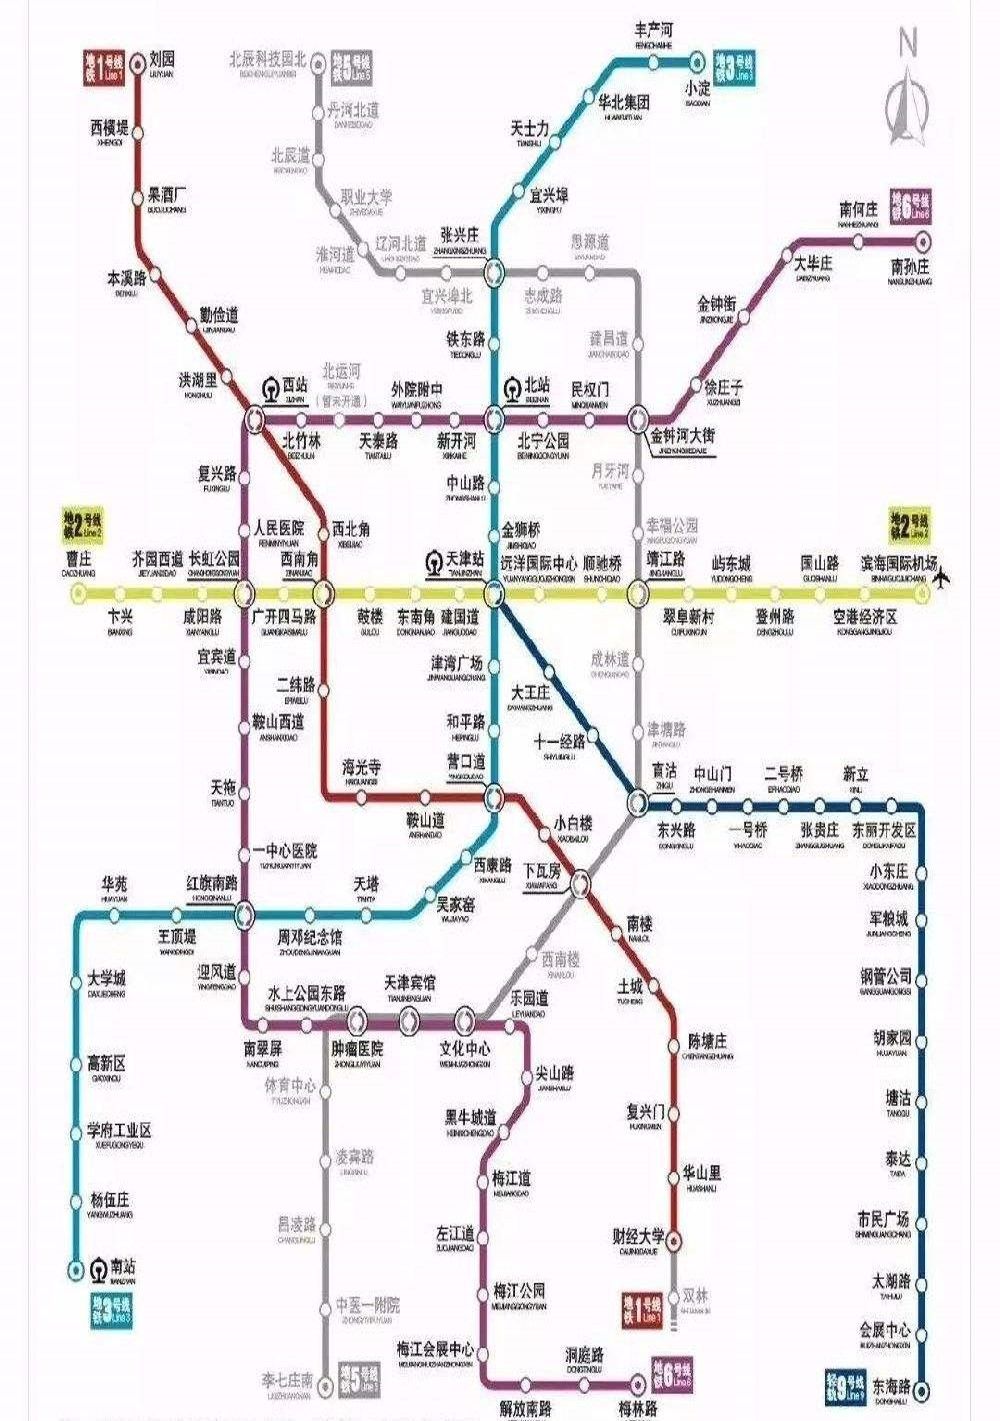 聊嘛儿呢 |天津地铁5号线开通了!